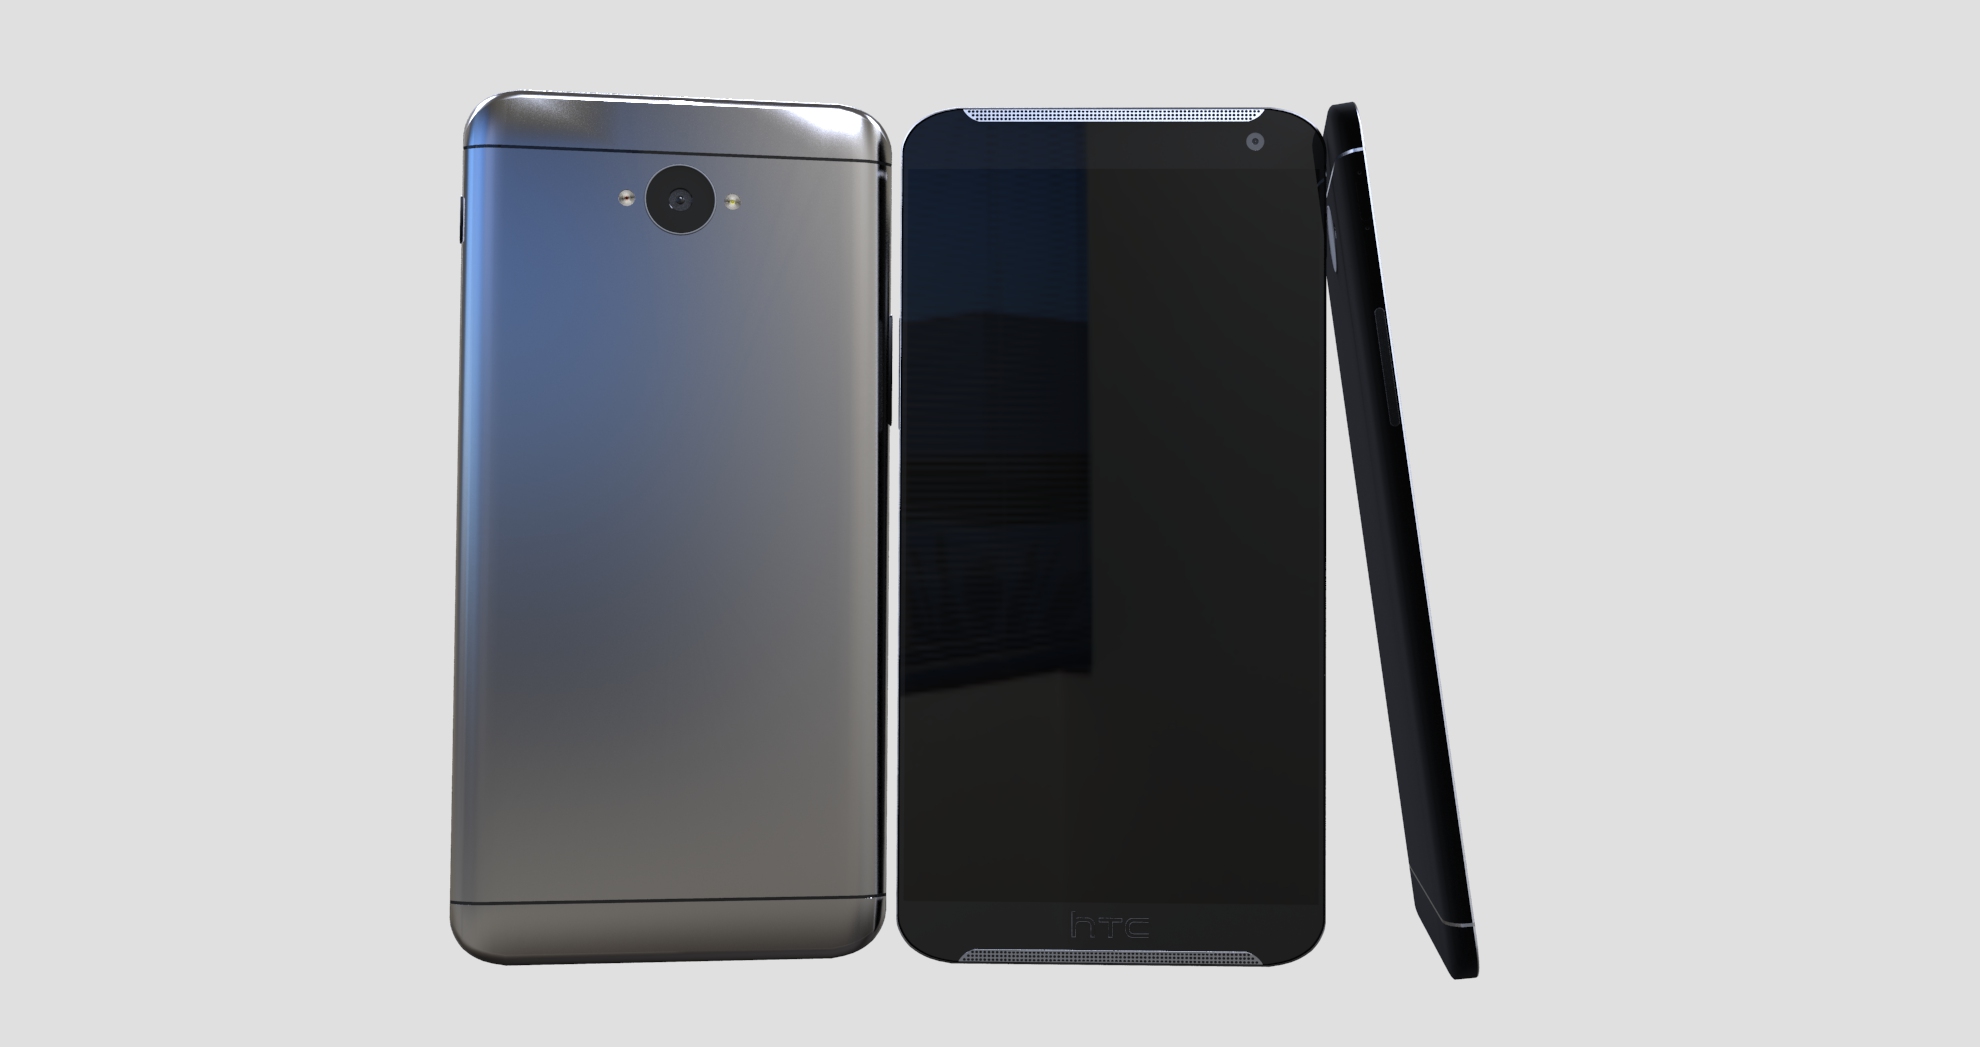 Concept Design แรกของ HTC One (M9) ออกมาแล้ว ยังคงเอกลักษณ์เดิมๆไว้ครบถ้วน